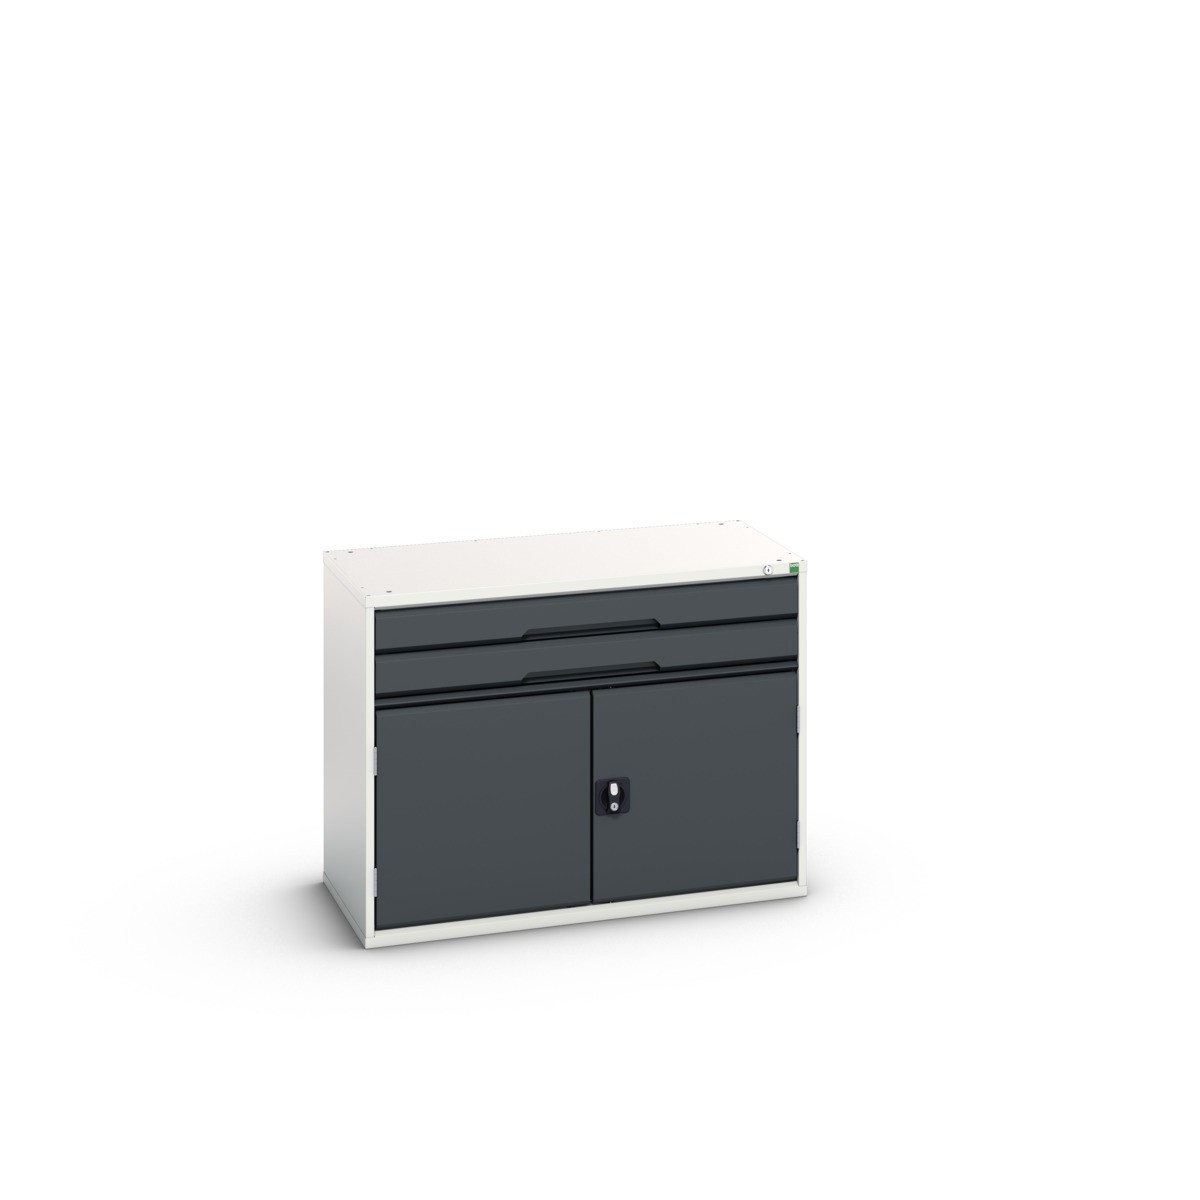 16925516.19 - verso drawer-door cabinet